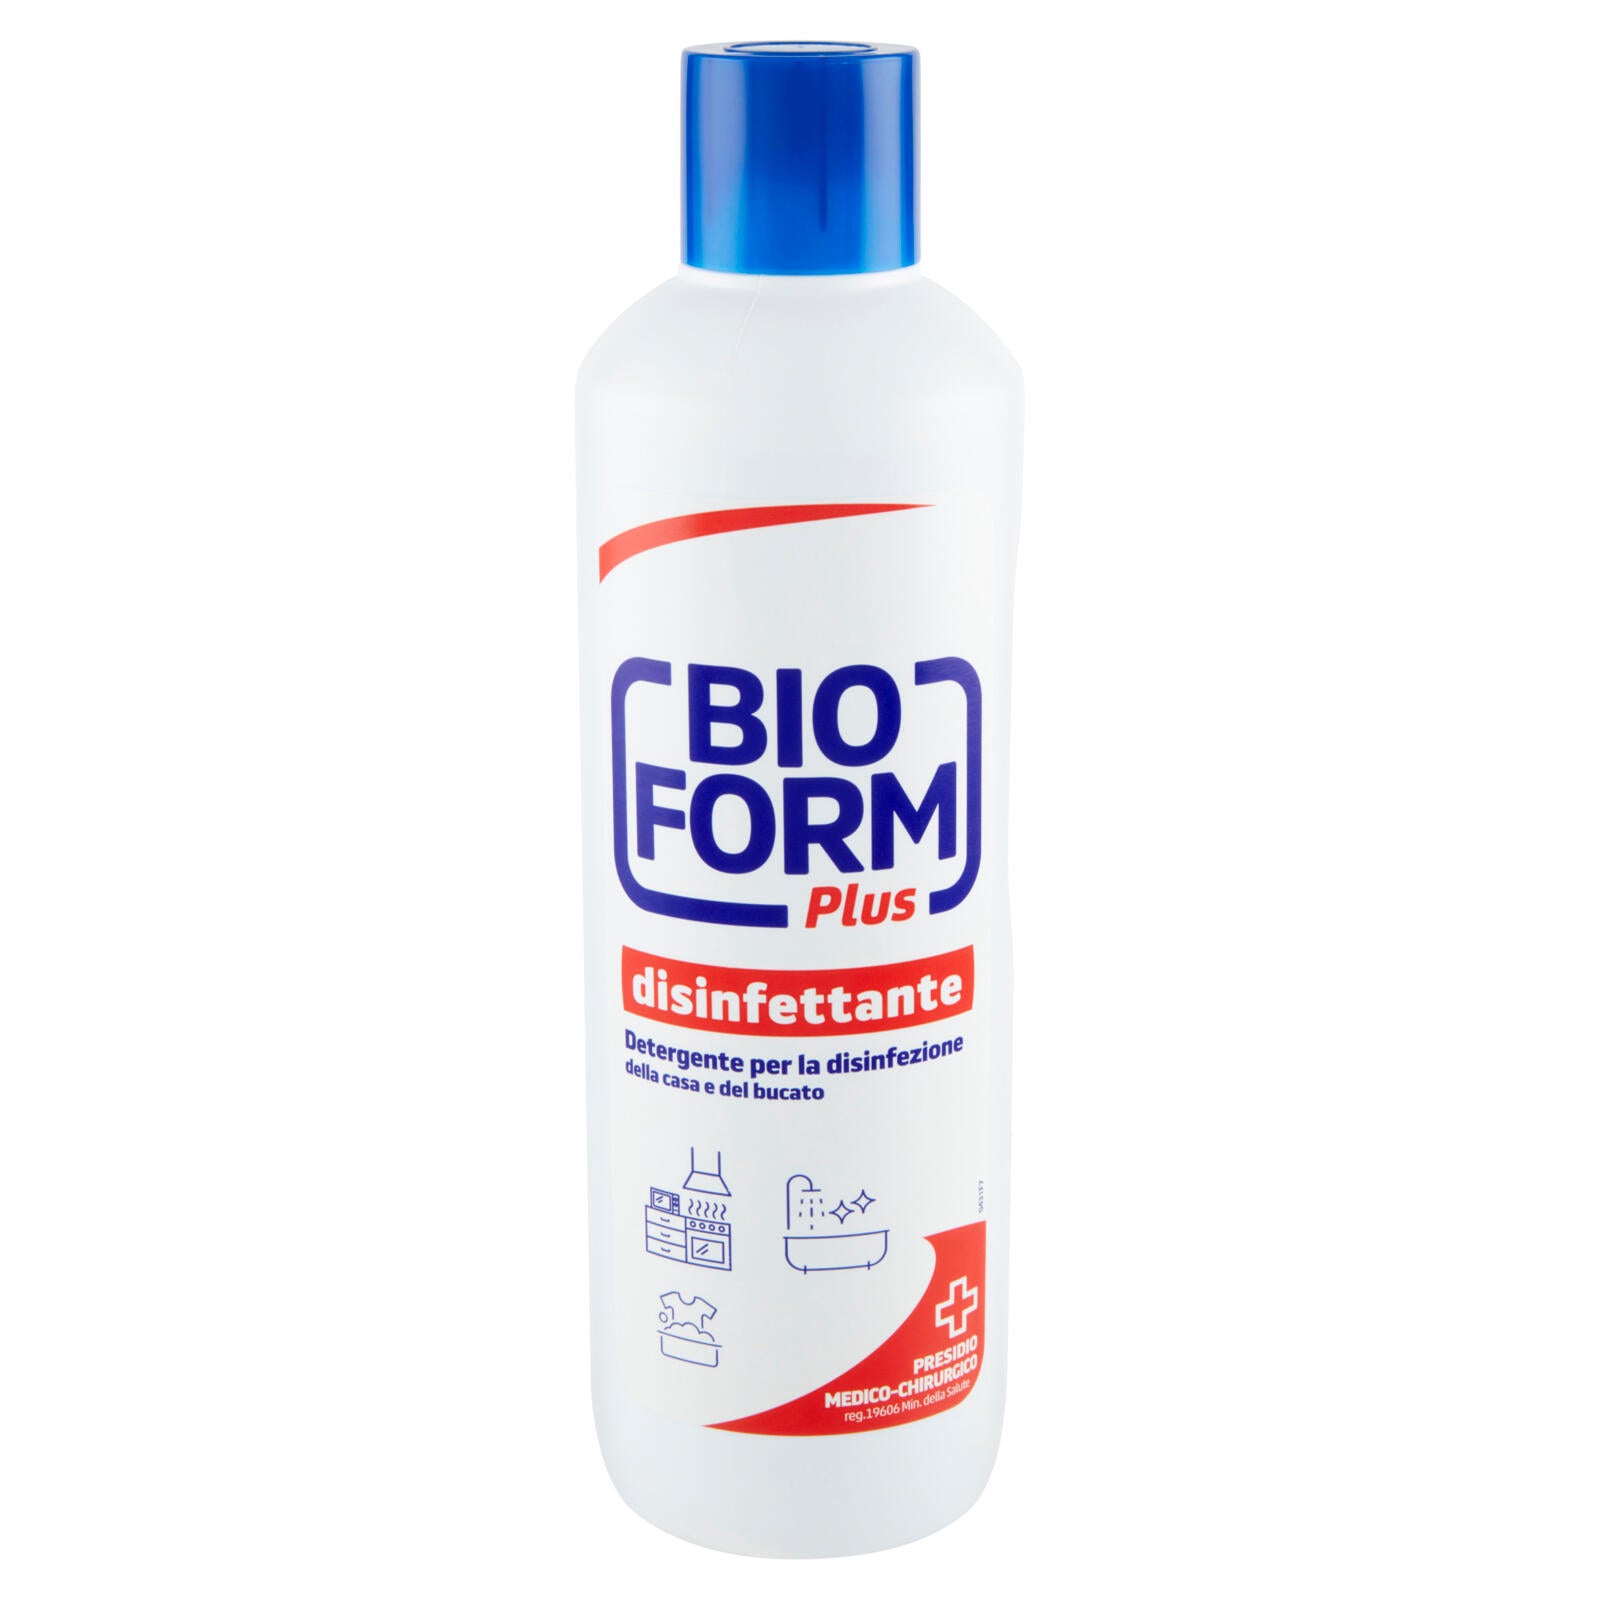 Bioform Plus disinfettante Detergente per la disinfezione della casa e del bucato 1 L